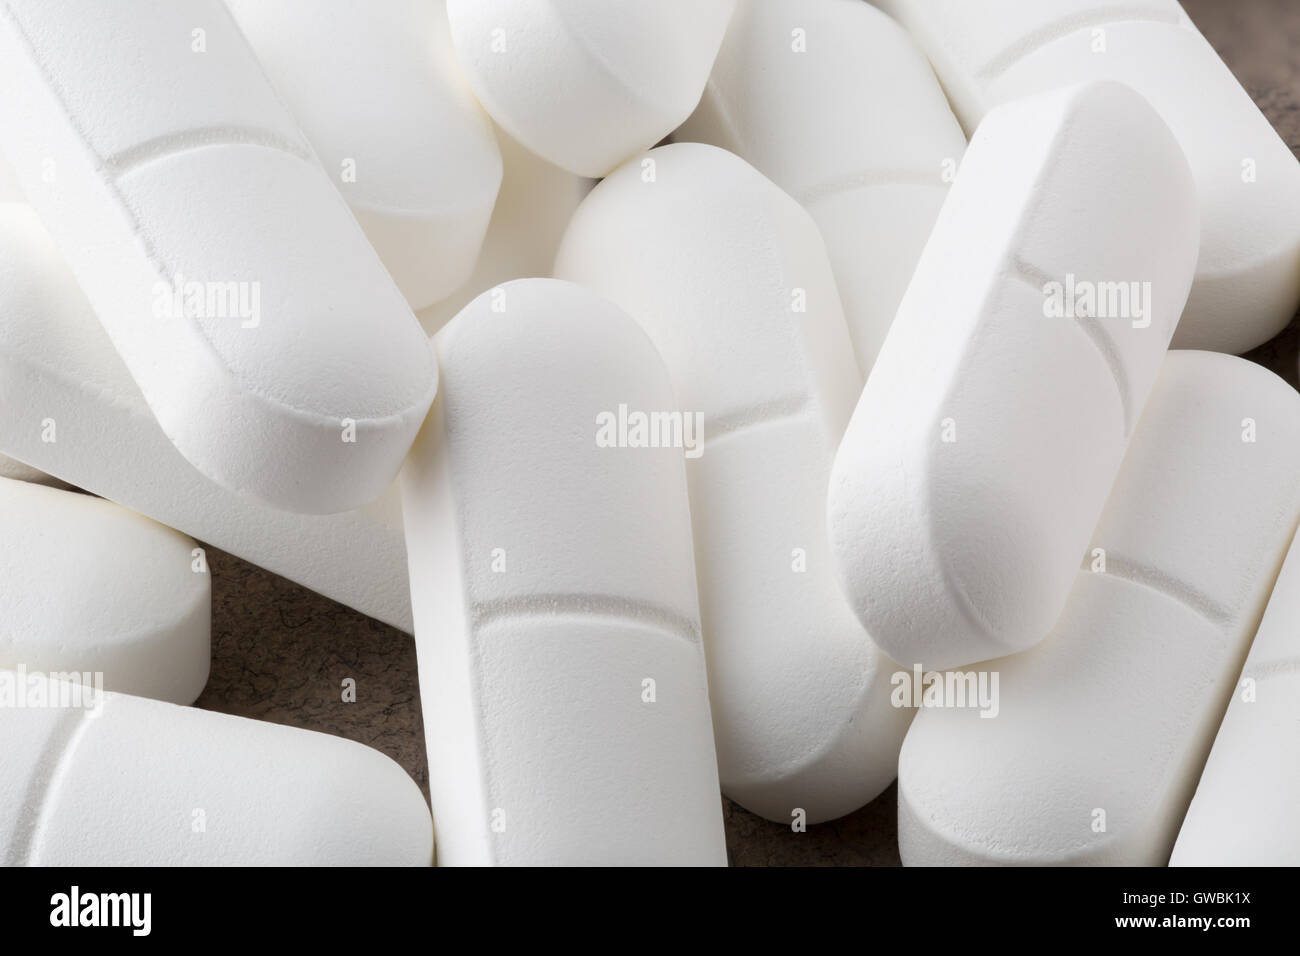 Heap of antibiotic white pills. Closeup Stock Photo